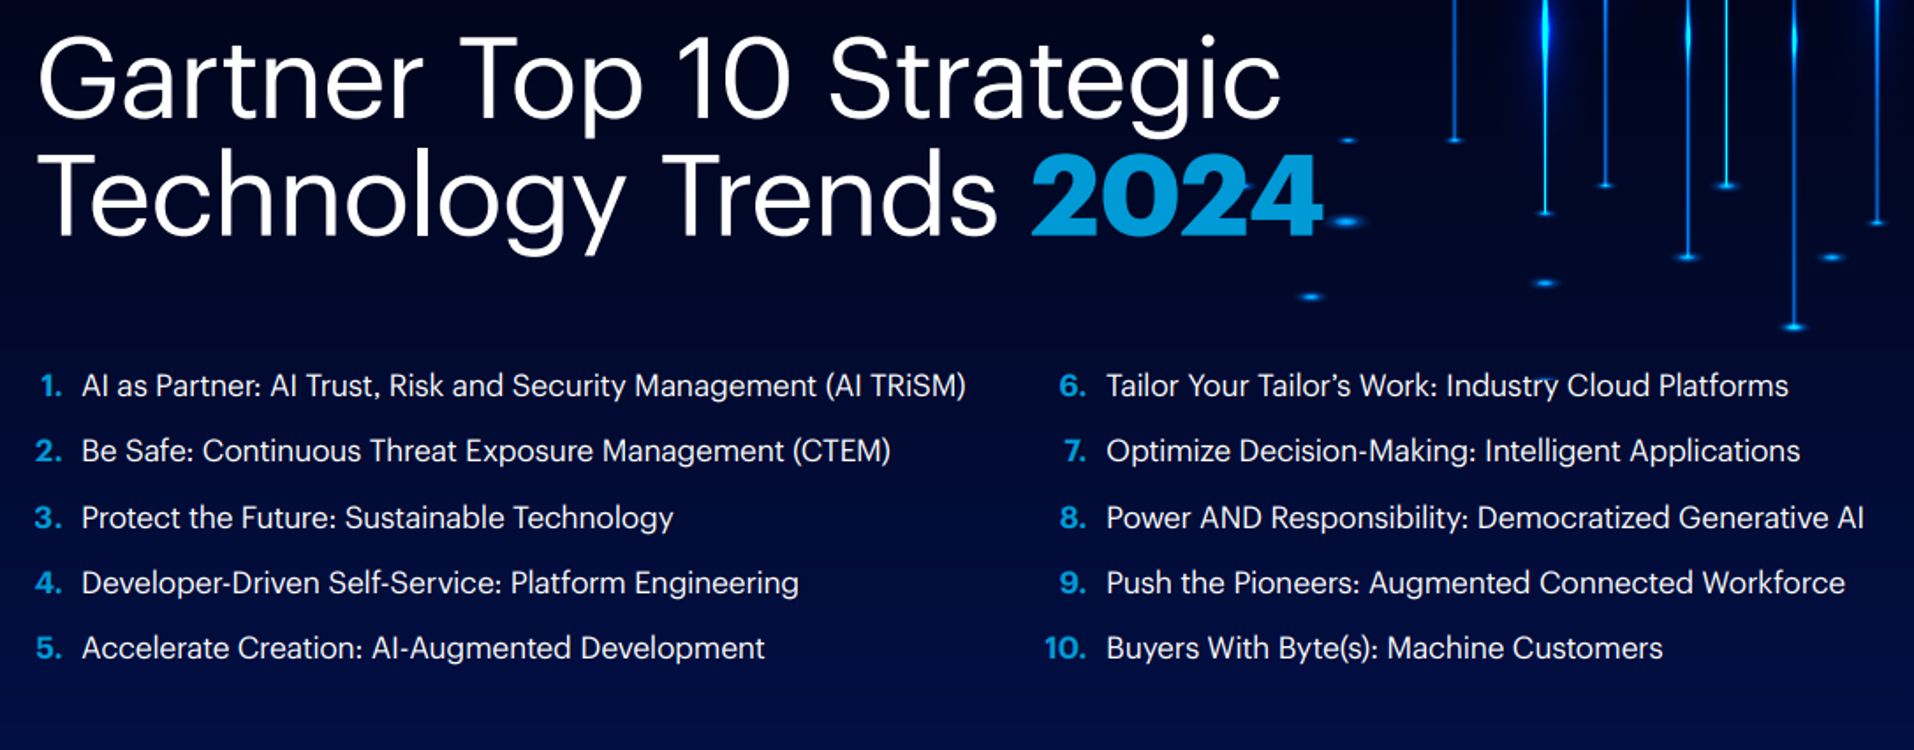 Gartner Top 10 - Strategic Technology Trends for 2024